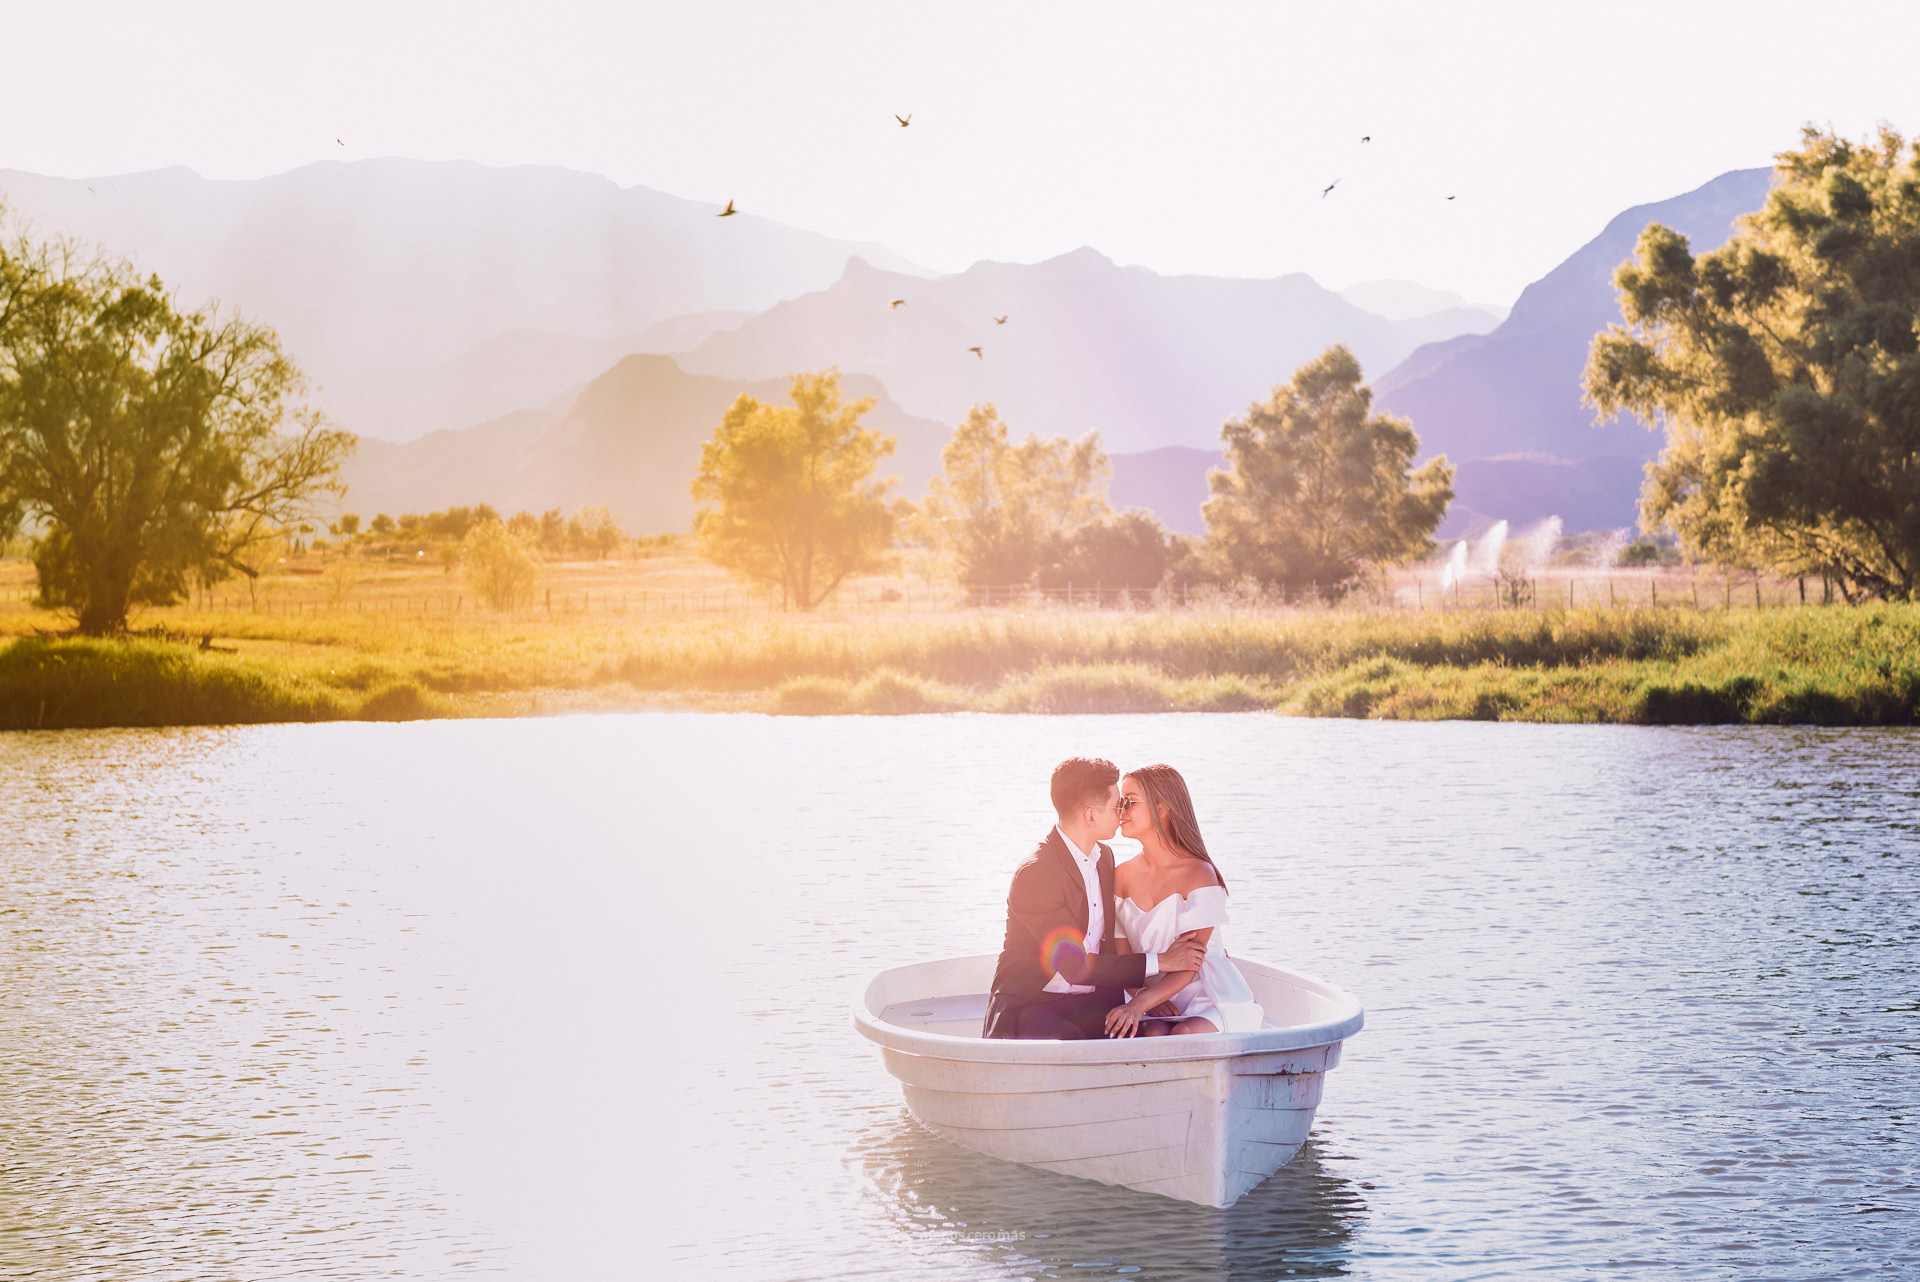 Imagen de Loami y Abimael disfrutando de un romántico paseo en lancha en el rancho Don Glafiro, Allende. Sonrientes y abrazados, la pareja se deleita con el paisaje natural y la conexión especial de su momento.